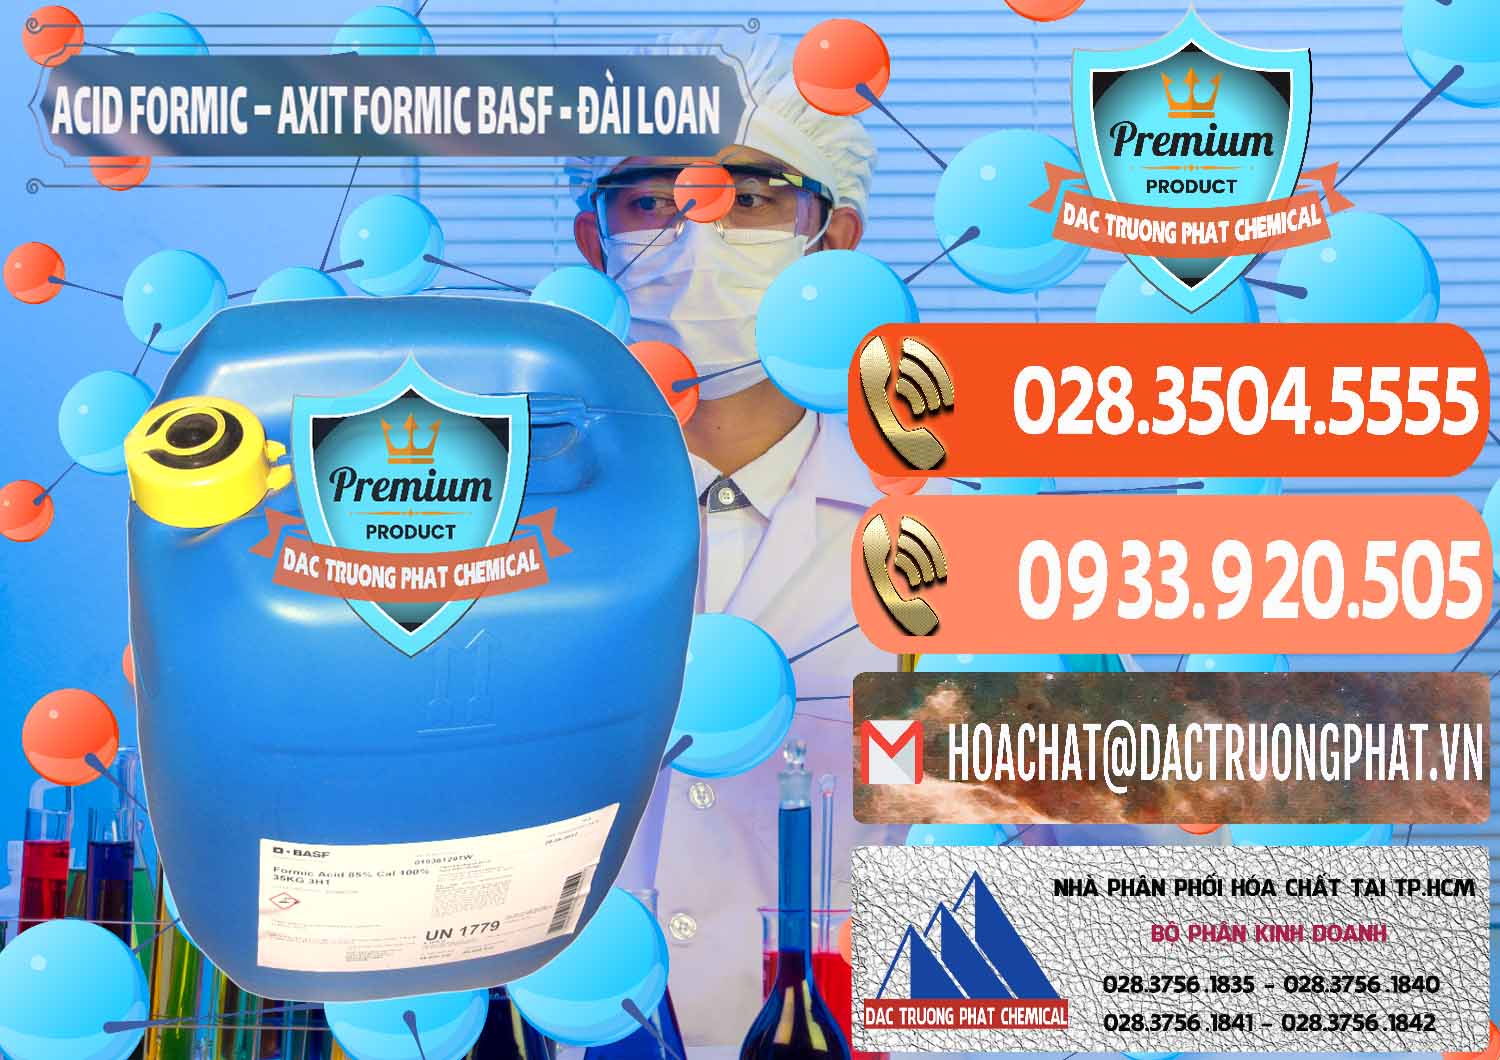 Đơn vị kinh doanh & bán Acid Formic - Axit Formic 85% BASF Đài Loan Taiwan - 0027 - Nơi chuyên bán và cung cấp hóa chất tại TP.HCM - hoachatmientay.com